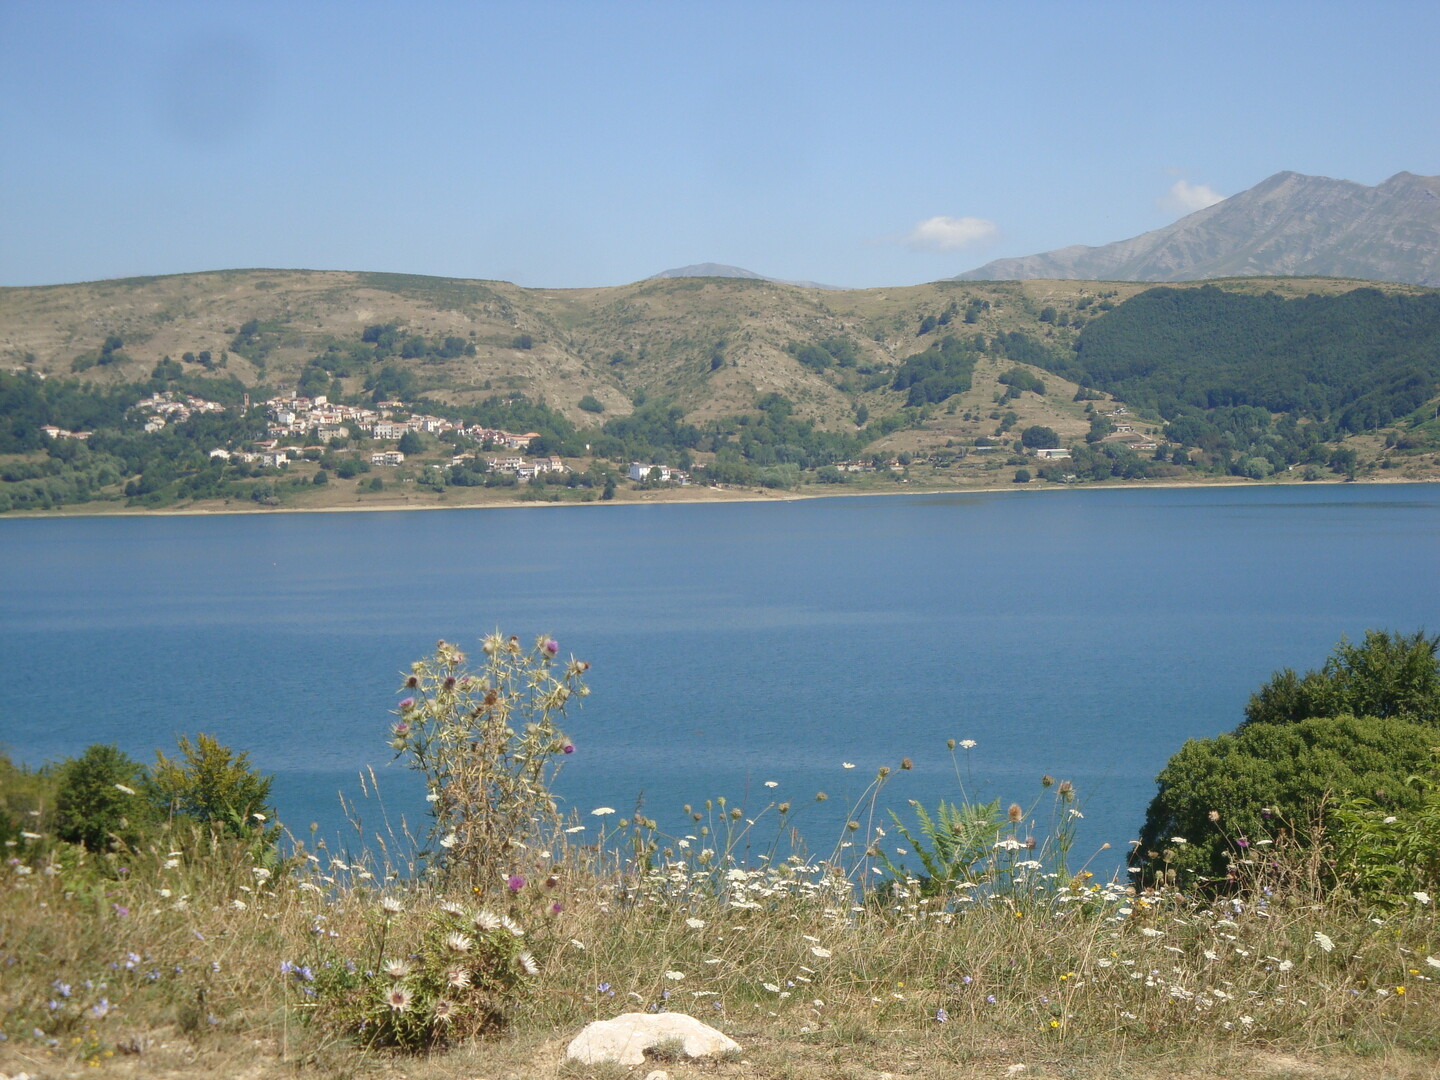 Lago di Campotosto
August 2011